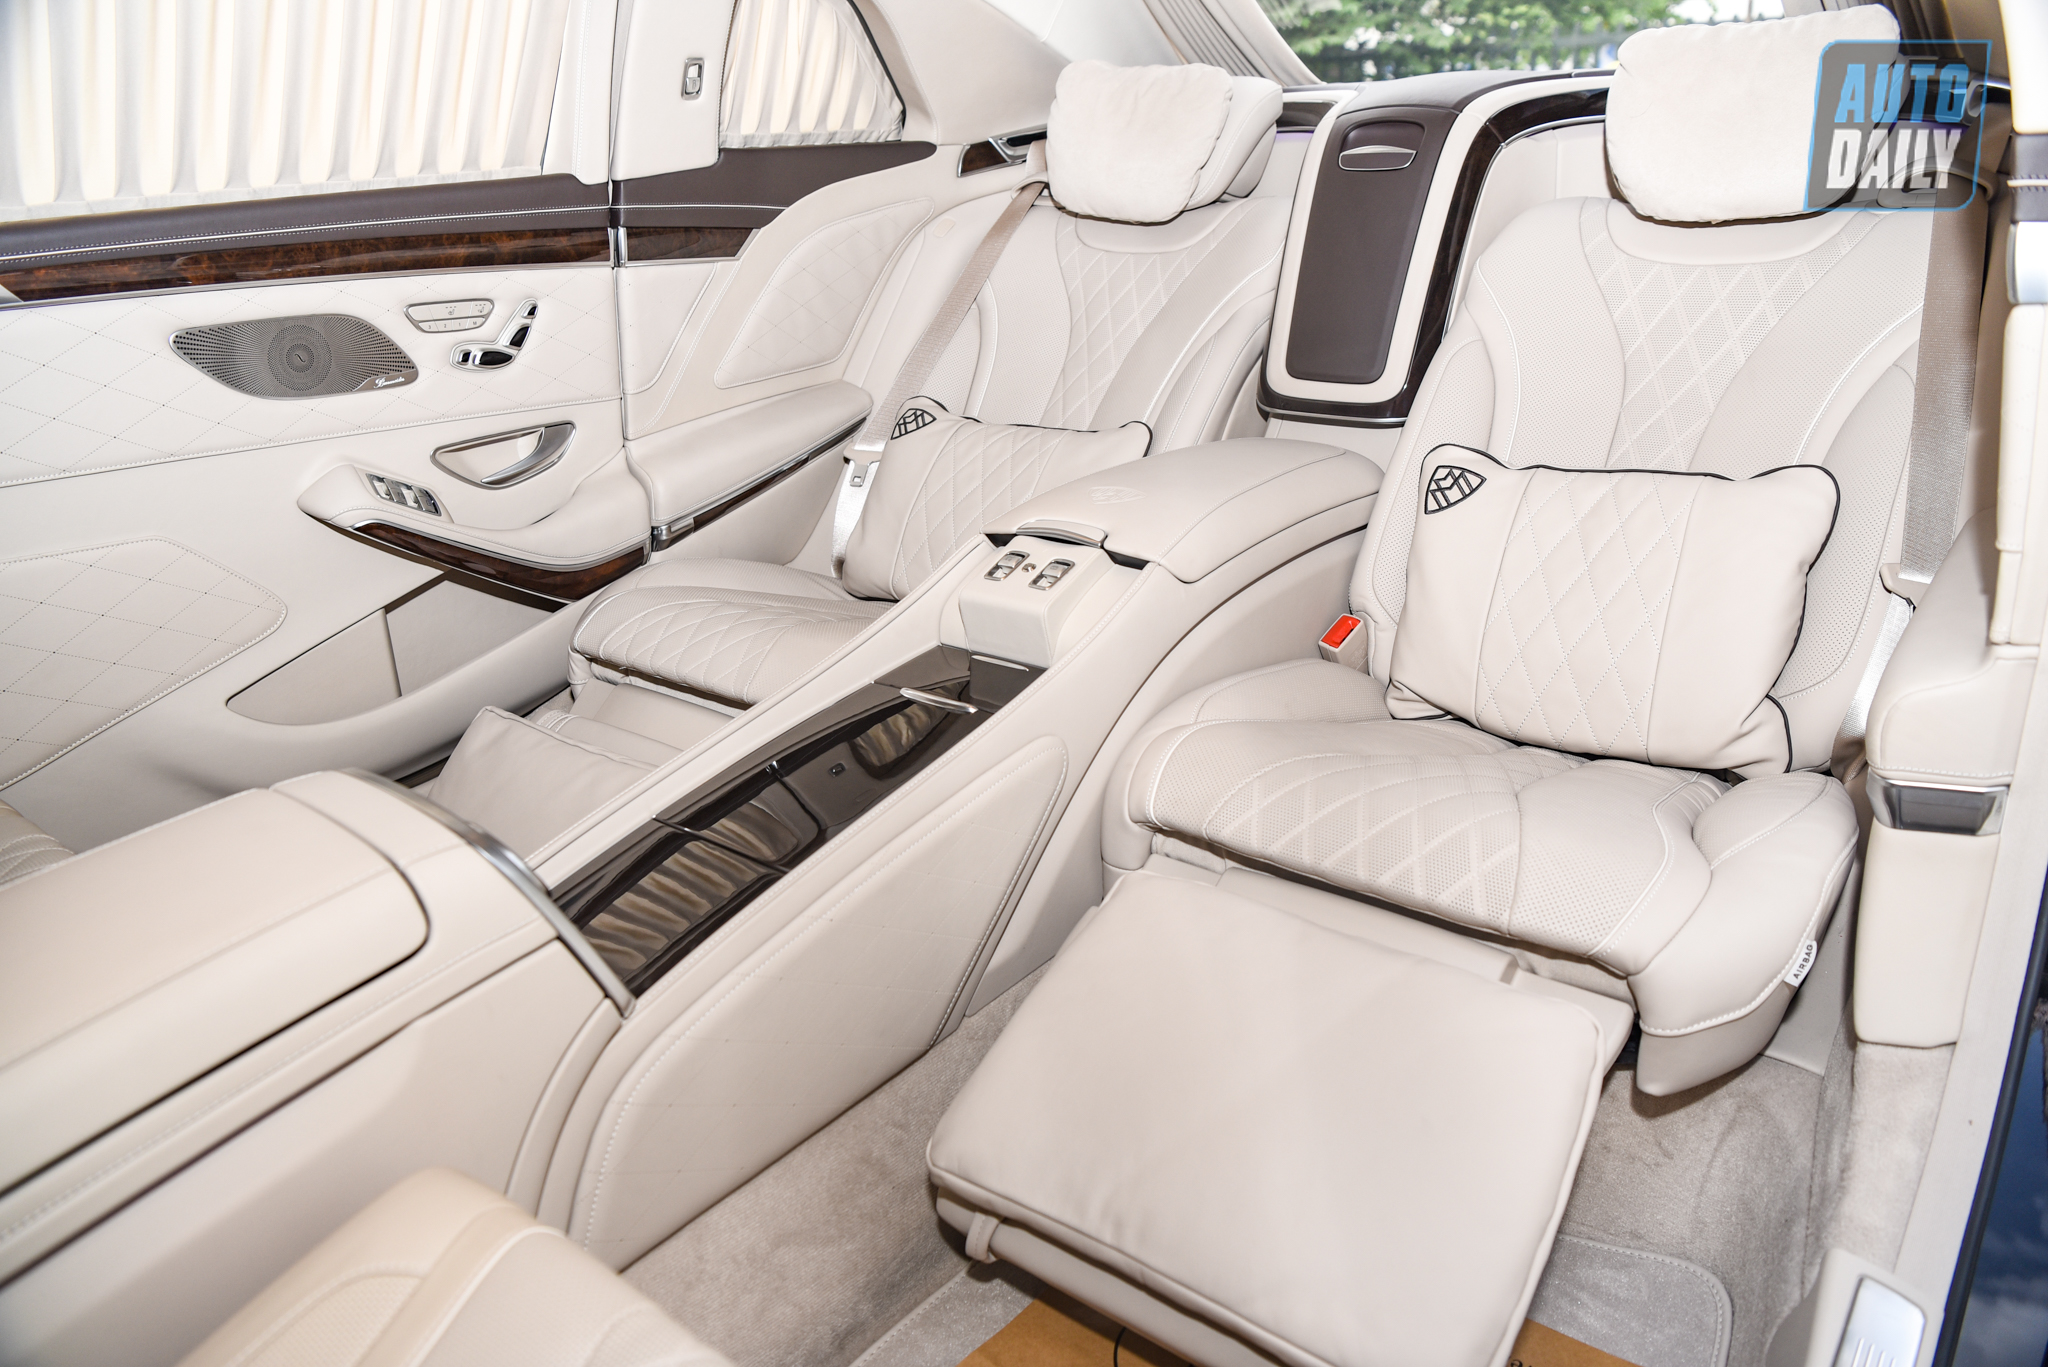 Limousine siêu sang cho 'Chủ tịch' Mercedes-Maybach S650 Pullman đẳng cấp cỡ nào? dsc-0893.jpg